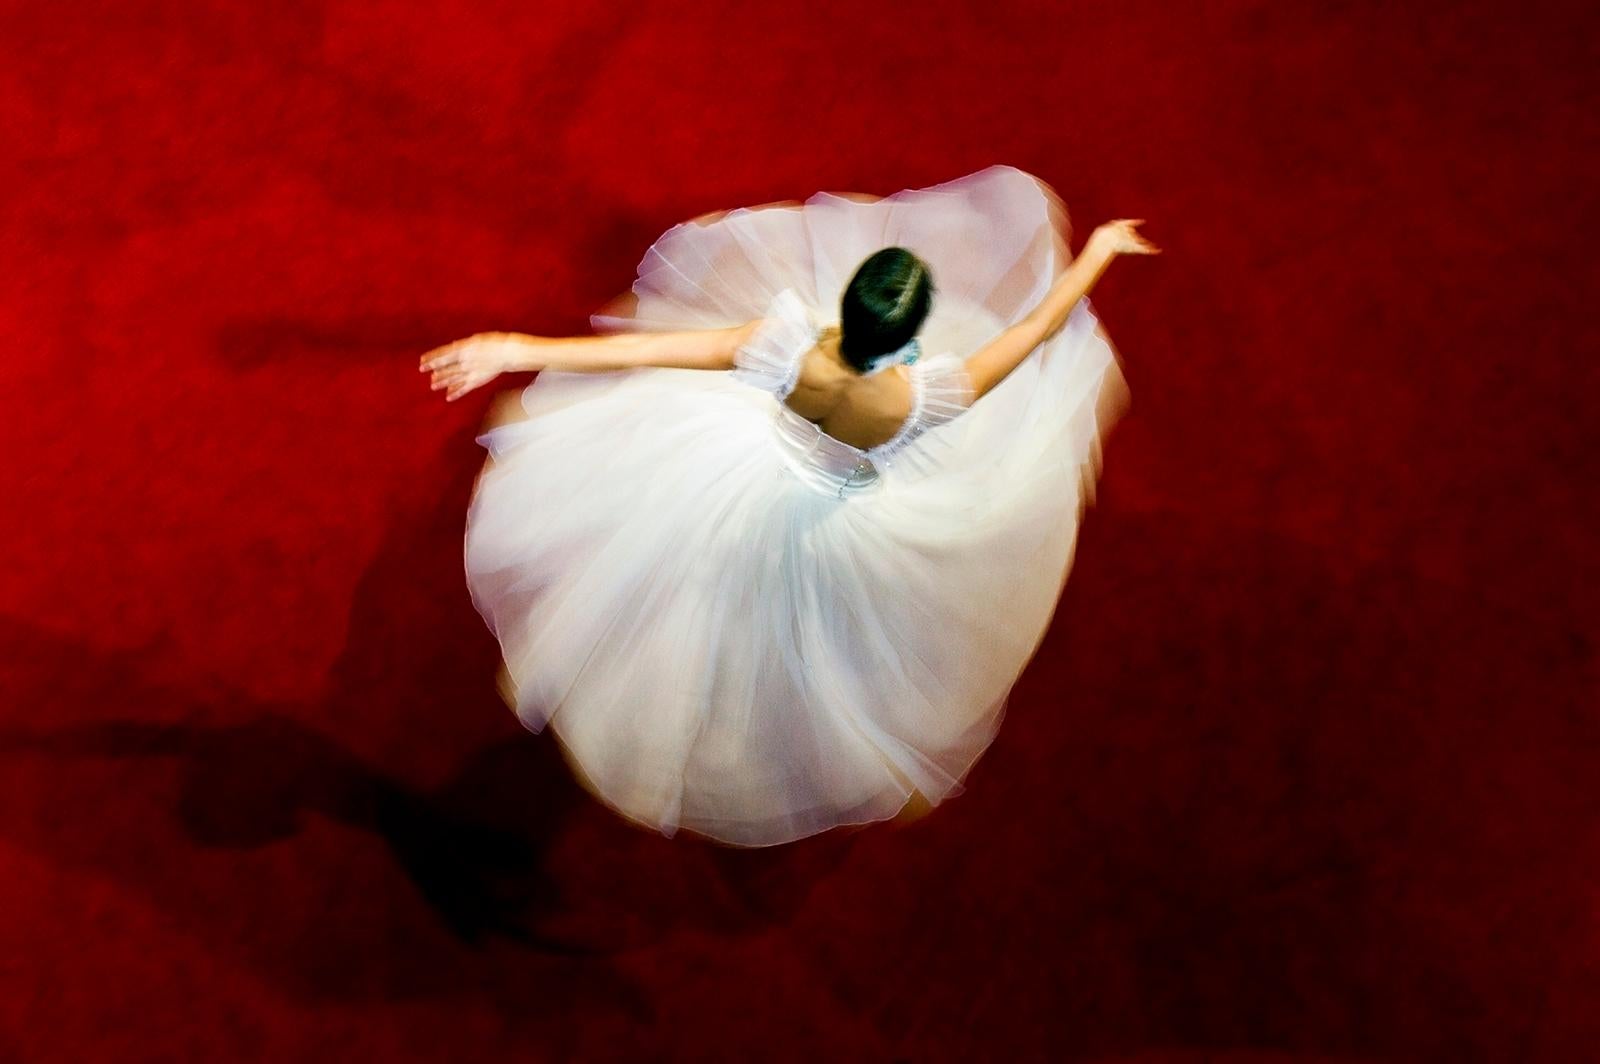 Tänzerin – signierter Stilllebendruck in limitierter Auflage, Farbfoto, Großformat (Rot), Color Photograph, von Ian Sanderson